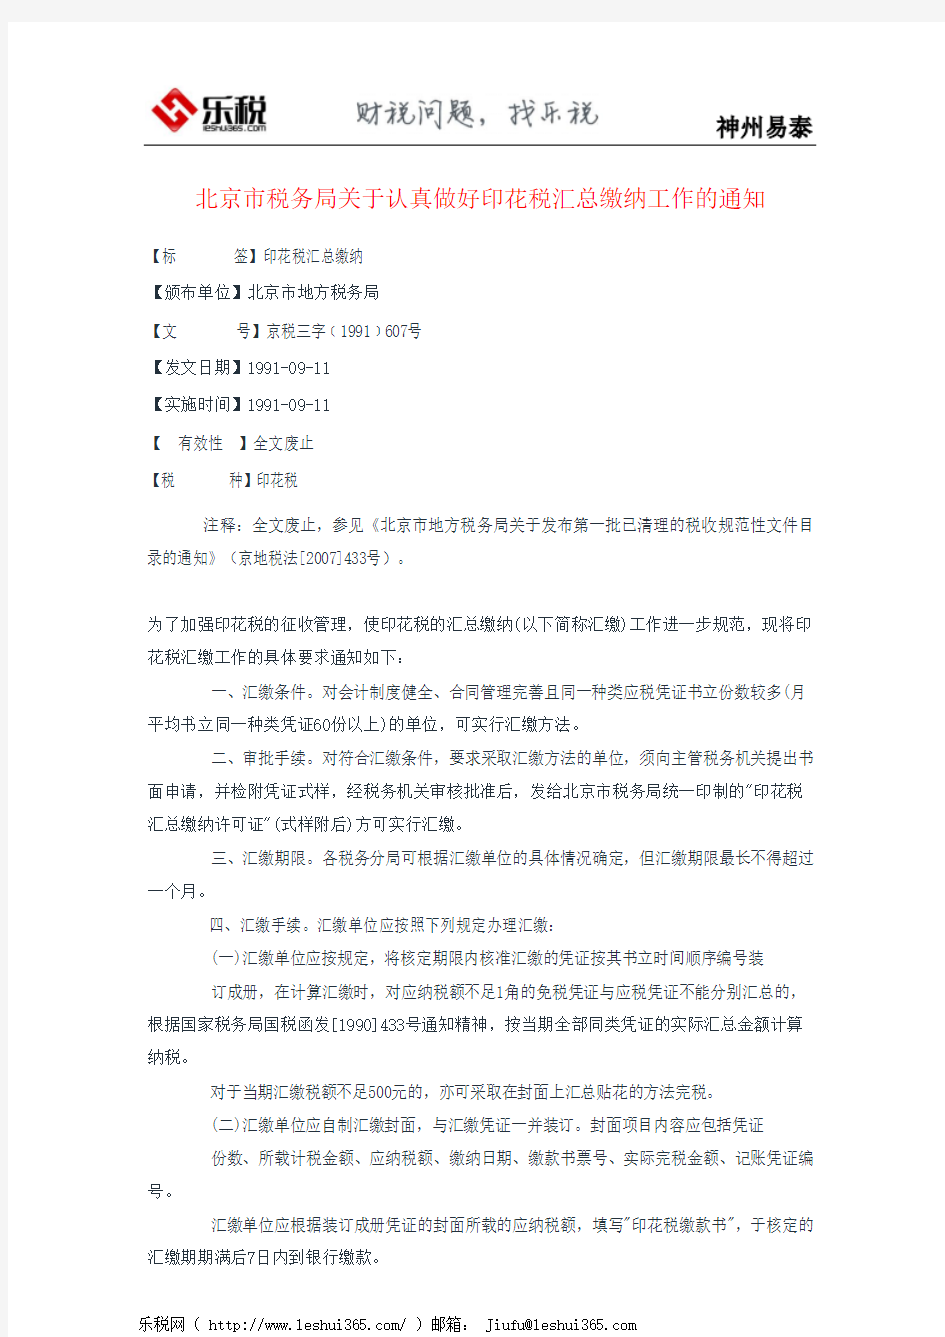 北京市税务局关于认真做好印花税汇总缴纳工作的通知